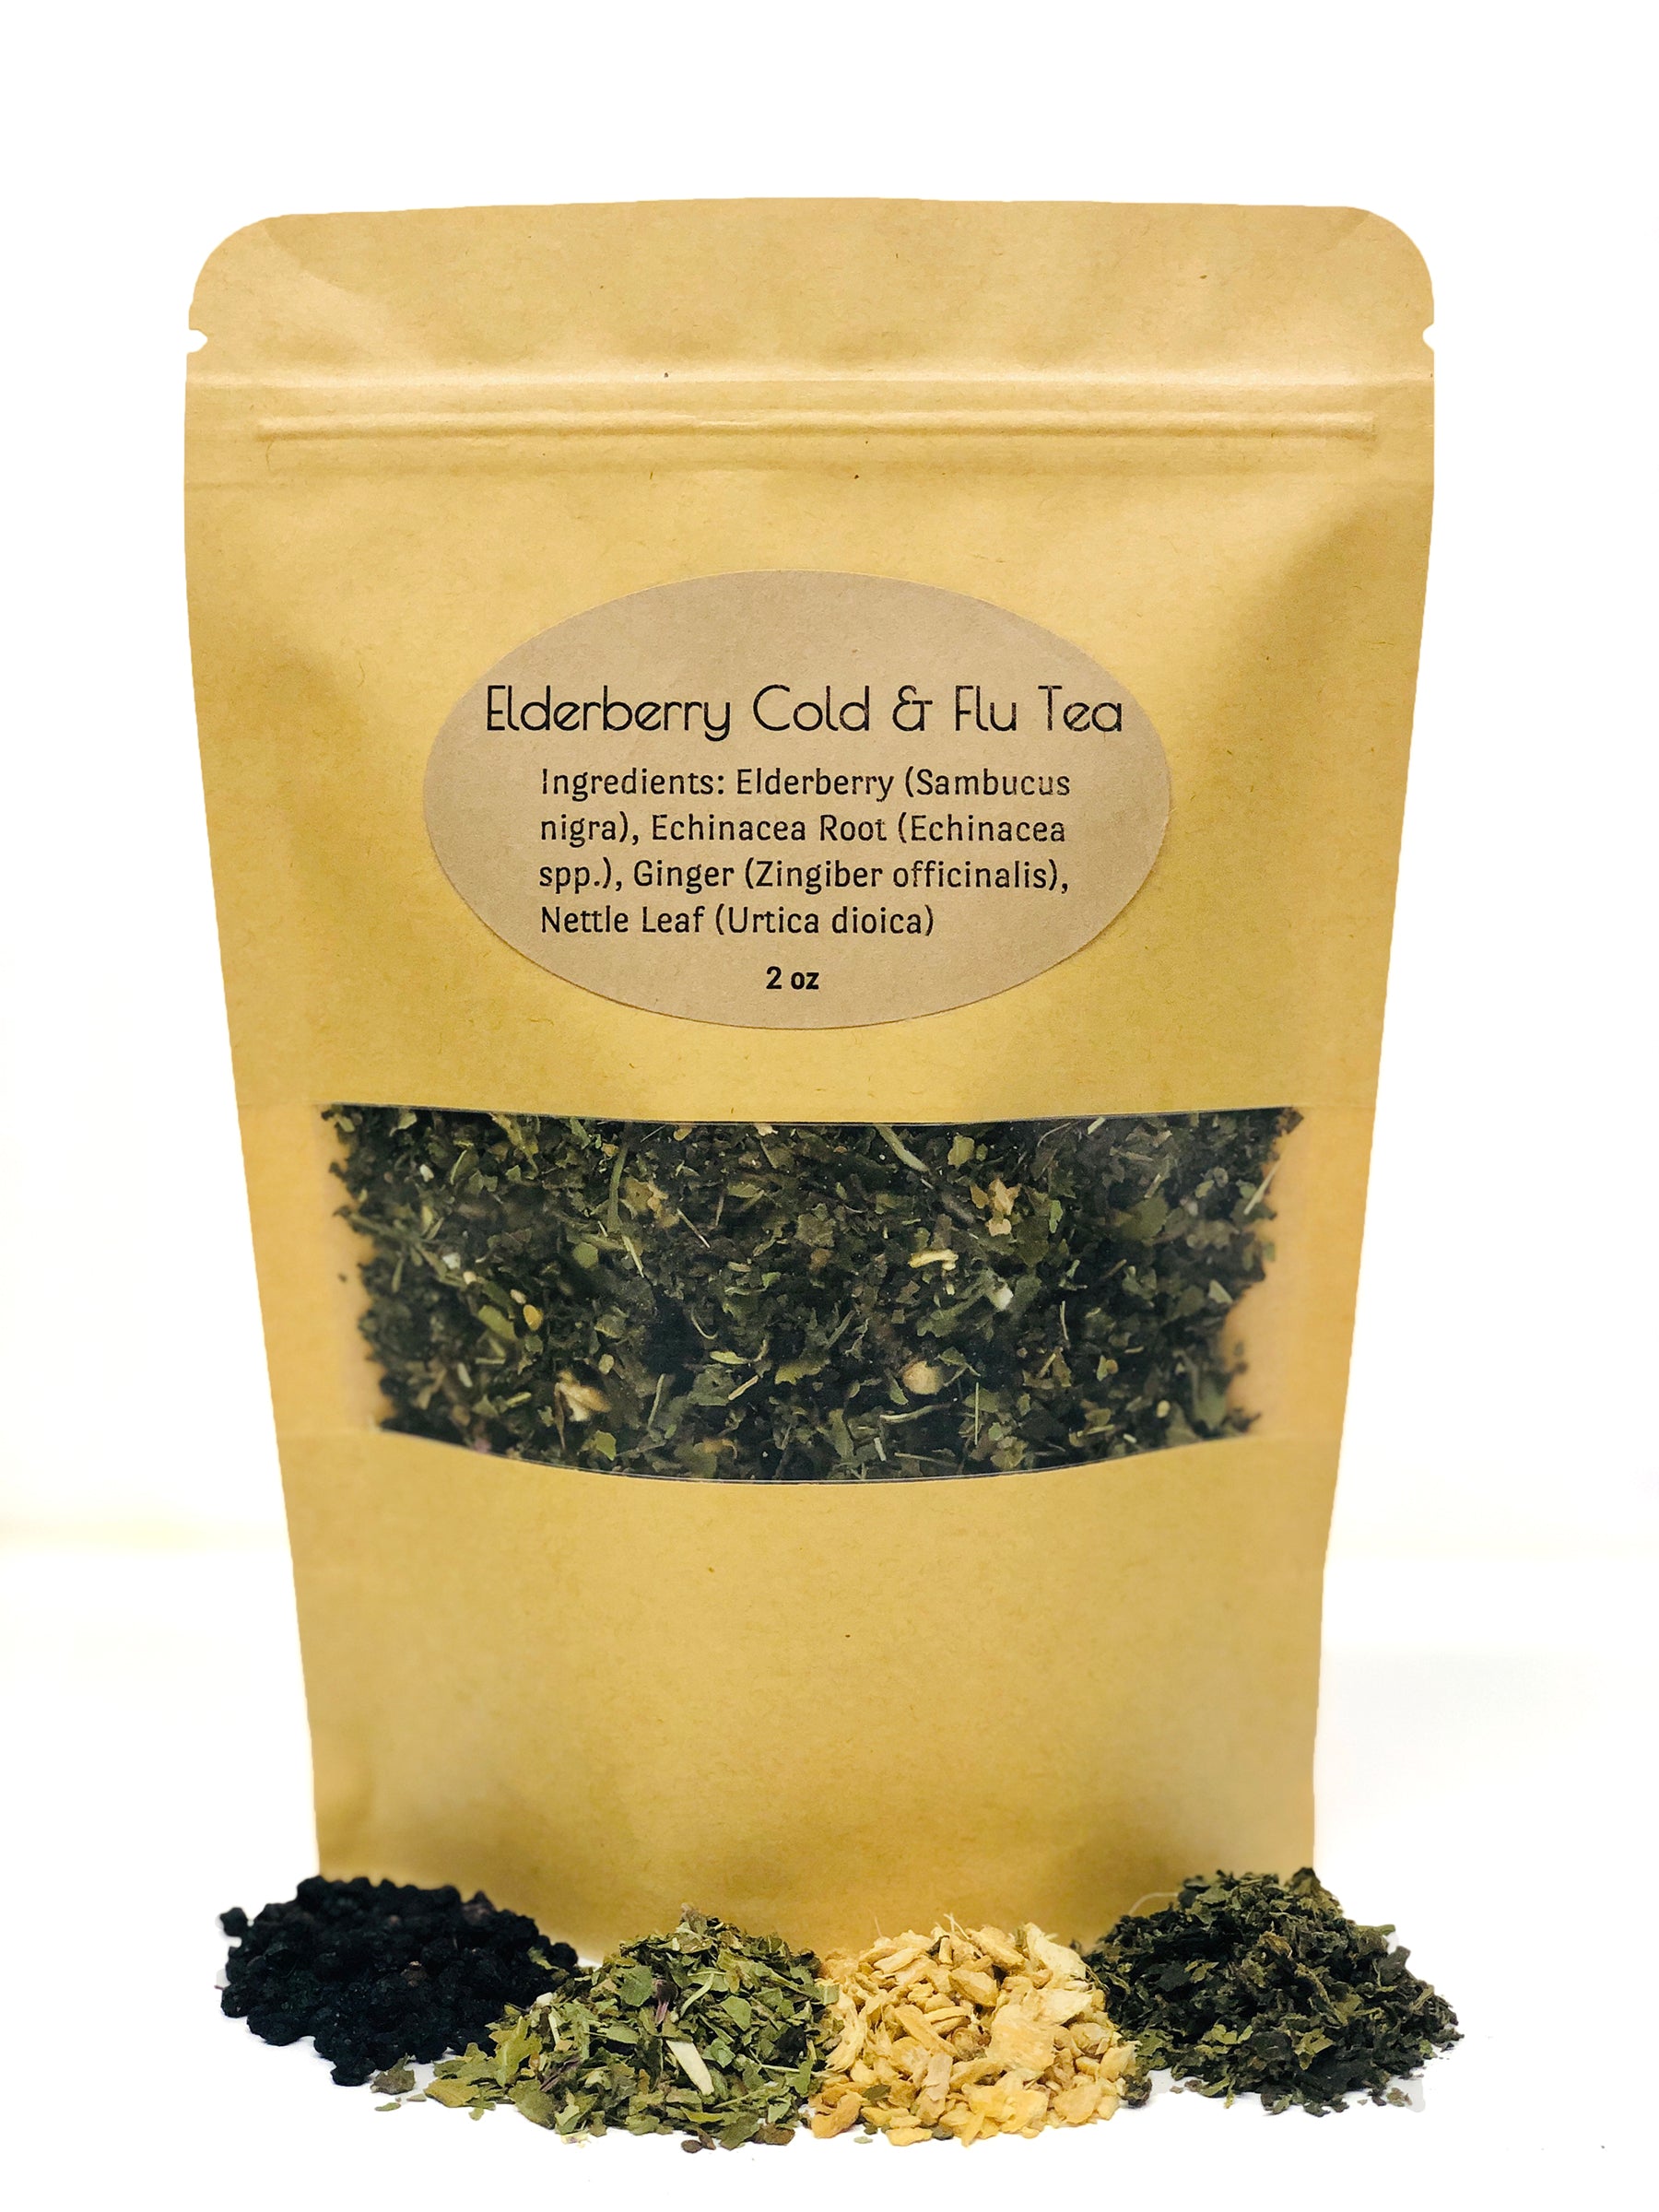 Elderberry Tea Tea The Herbologist Shop 